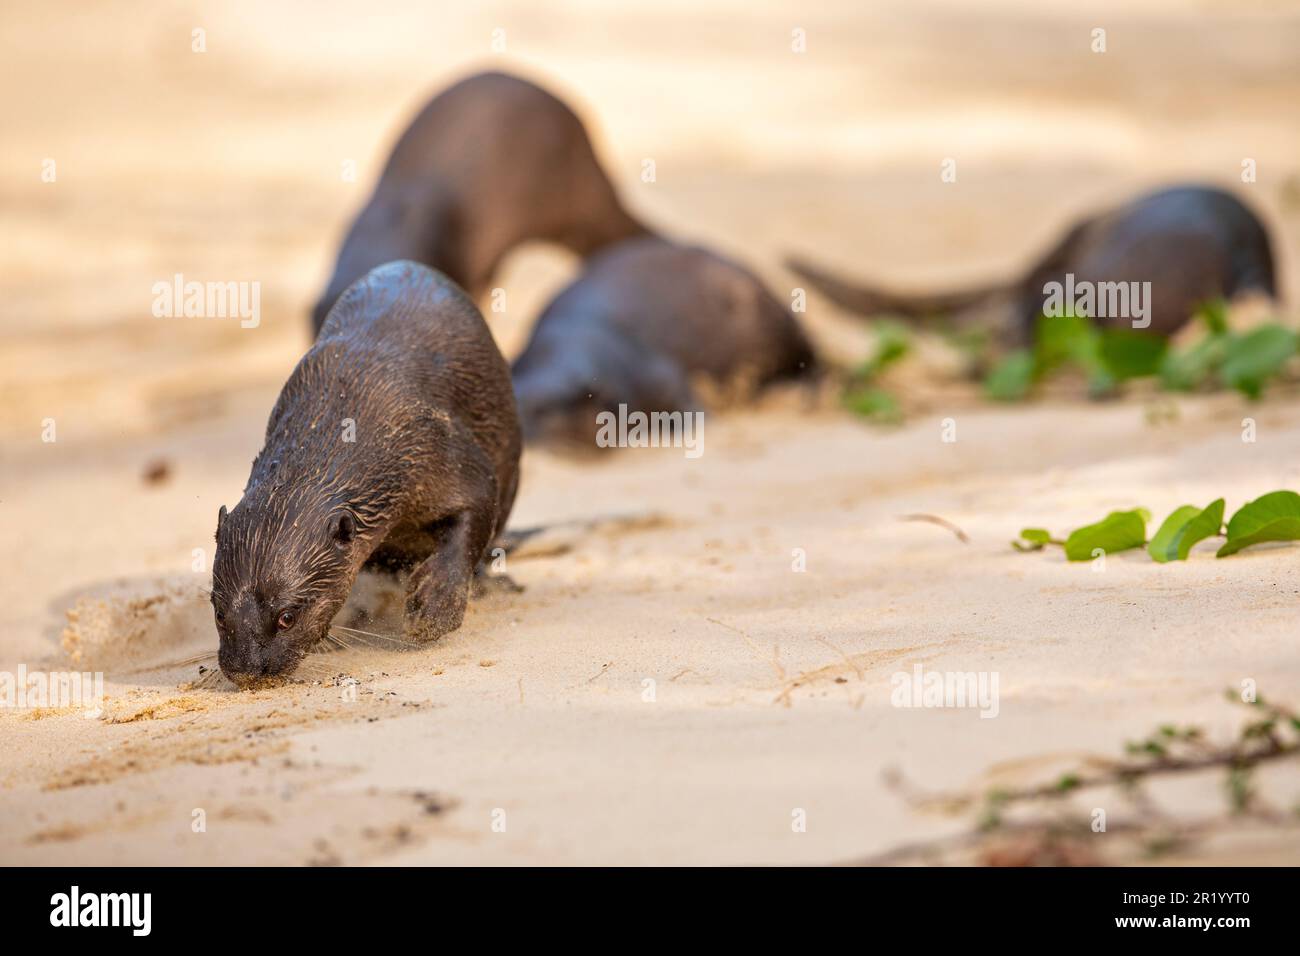 Una lontra rivestita liscia annienta il profumo del terreno mentre il resto della famiglia riposa sulla spiaggia, Singapore Foto Stock